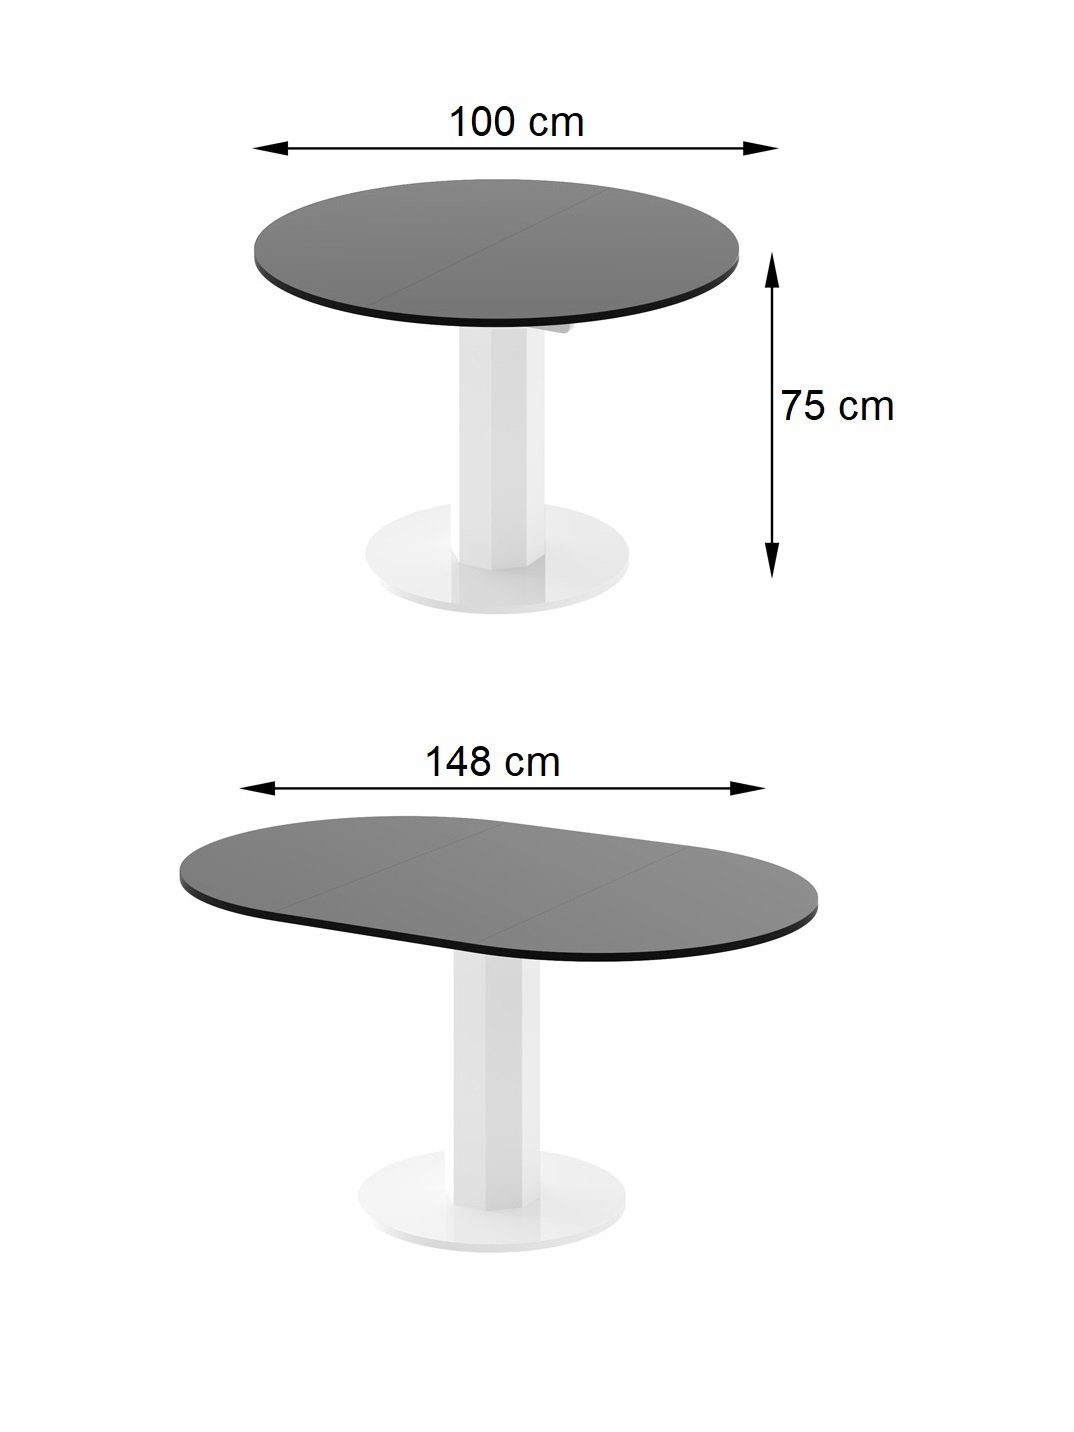 / rund Hochglanz designimpex HES-111 Design Schwarz Beton Esstisch Esstisch ausziehbar Tisch Hochglanz 100-148cm oval